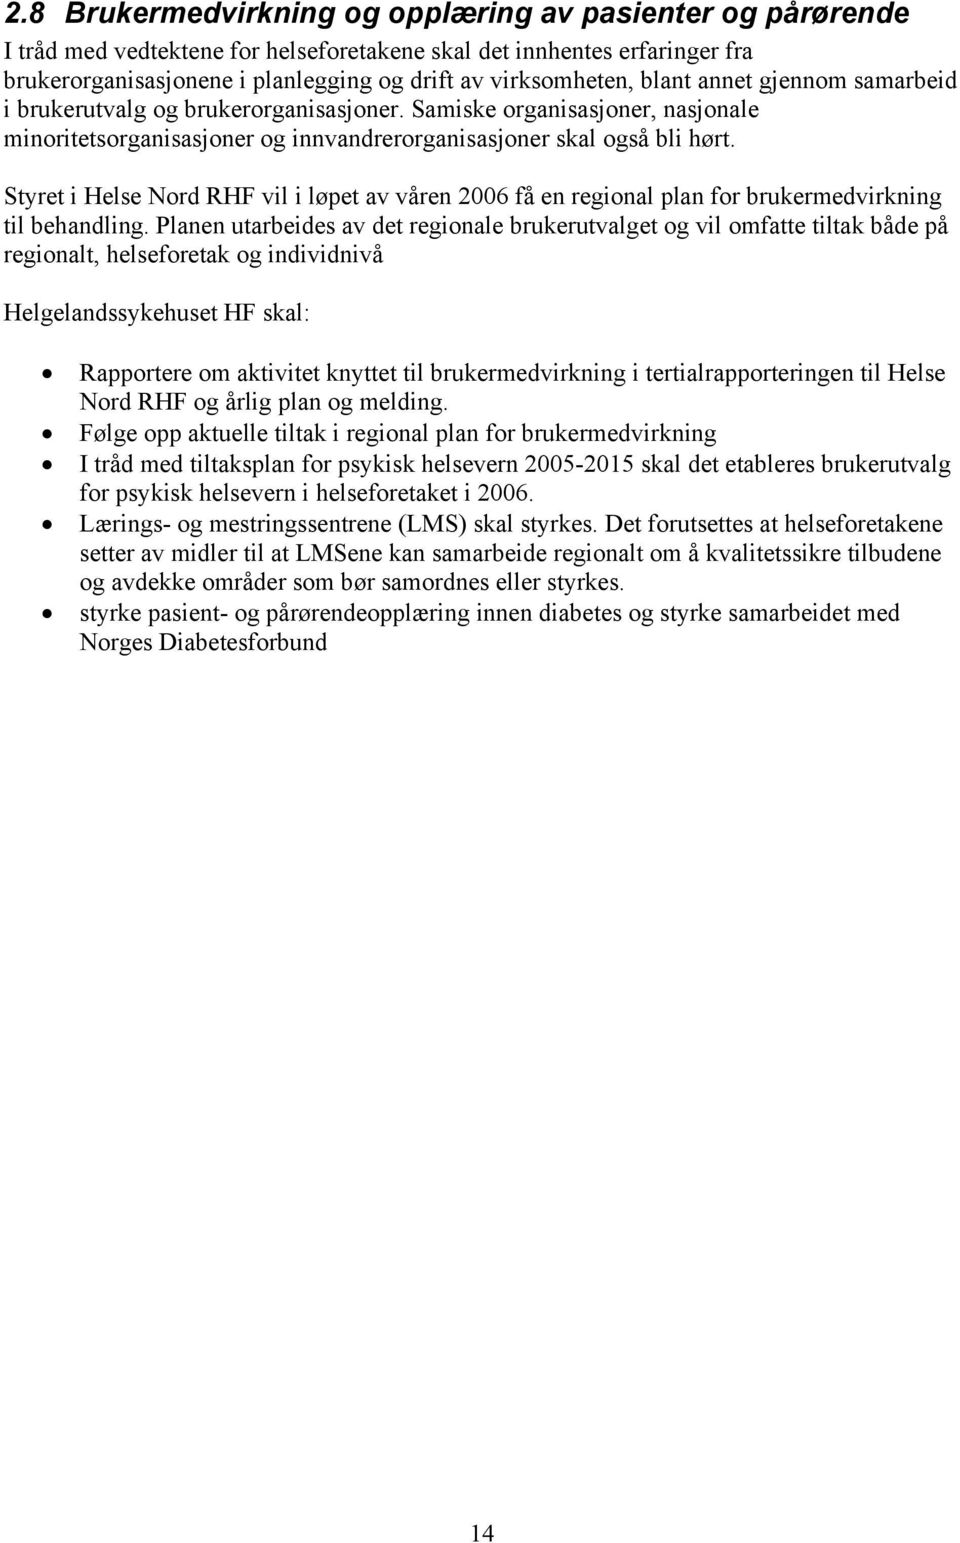 Styret i Helse Nord RHF vil i løpet av våren 2006 få en regional plan for brukermedvirkning til behandling.